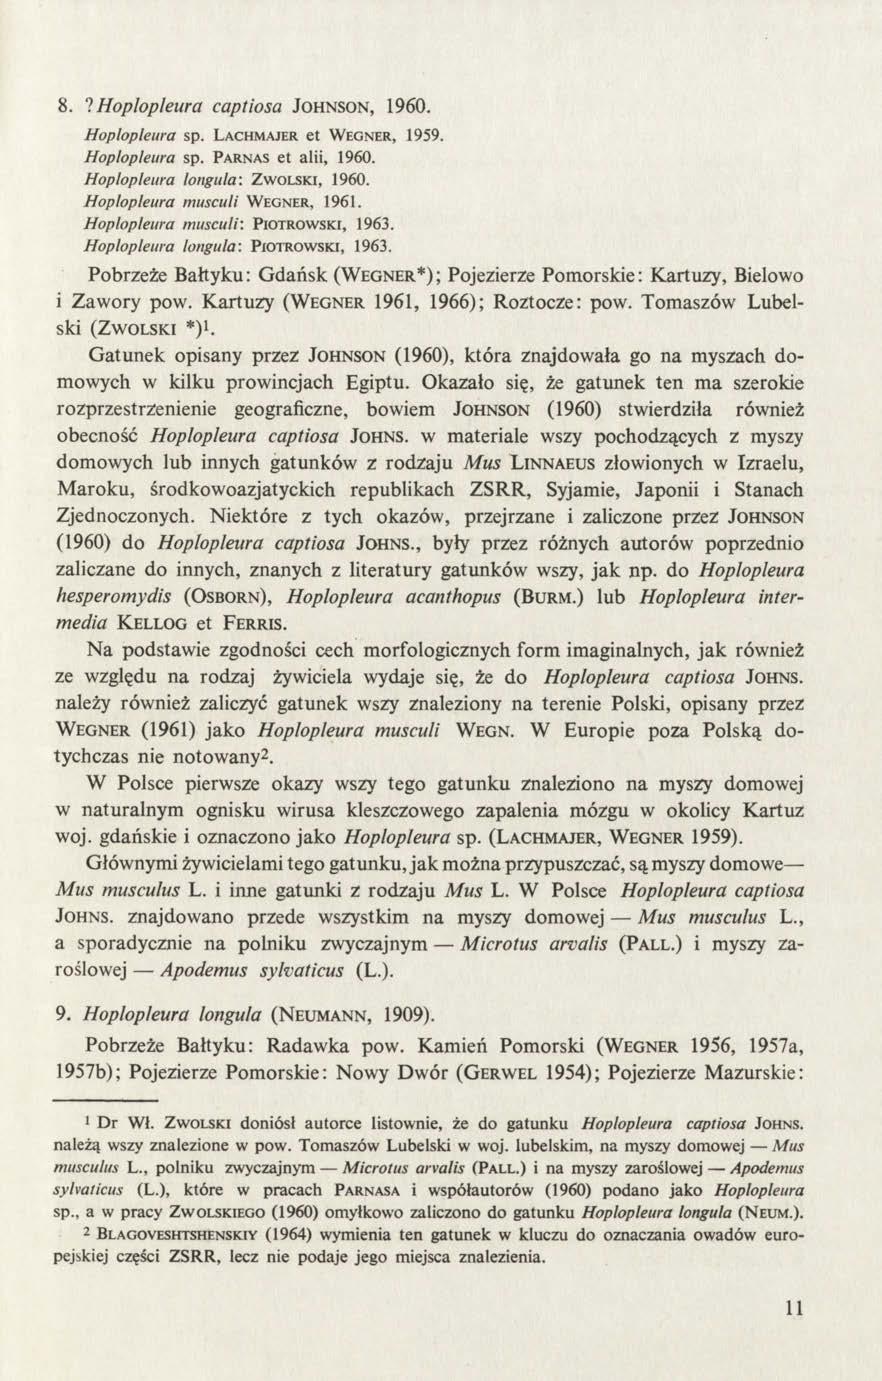 8.? Hoplopleura captiosa Johnson, 1960. Hoplopleura sp. Lachmajer et W egner, 1959. Hoplopleura sp. Parnas et alii, 1960. Hoplopleura longula: Z wolski, 1960. Hoplopleura musculi W egner, 1961.